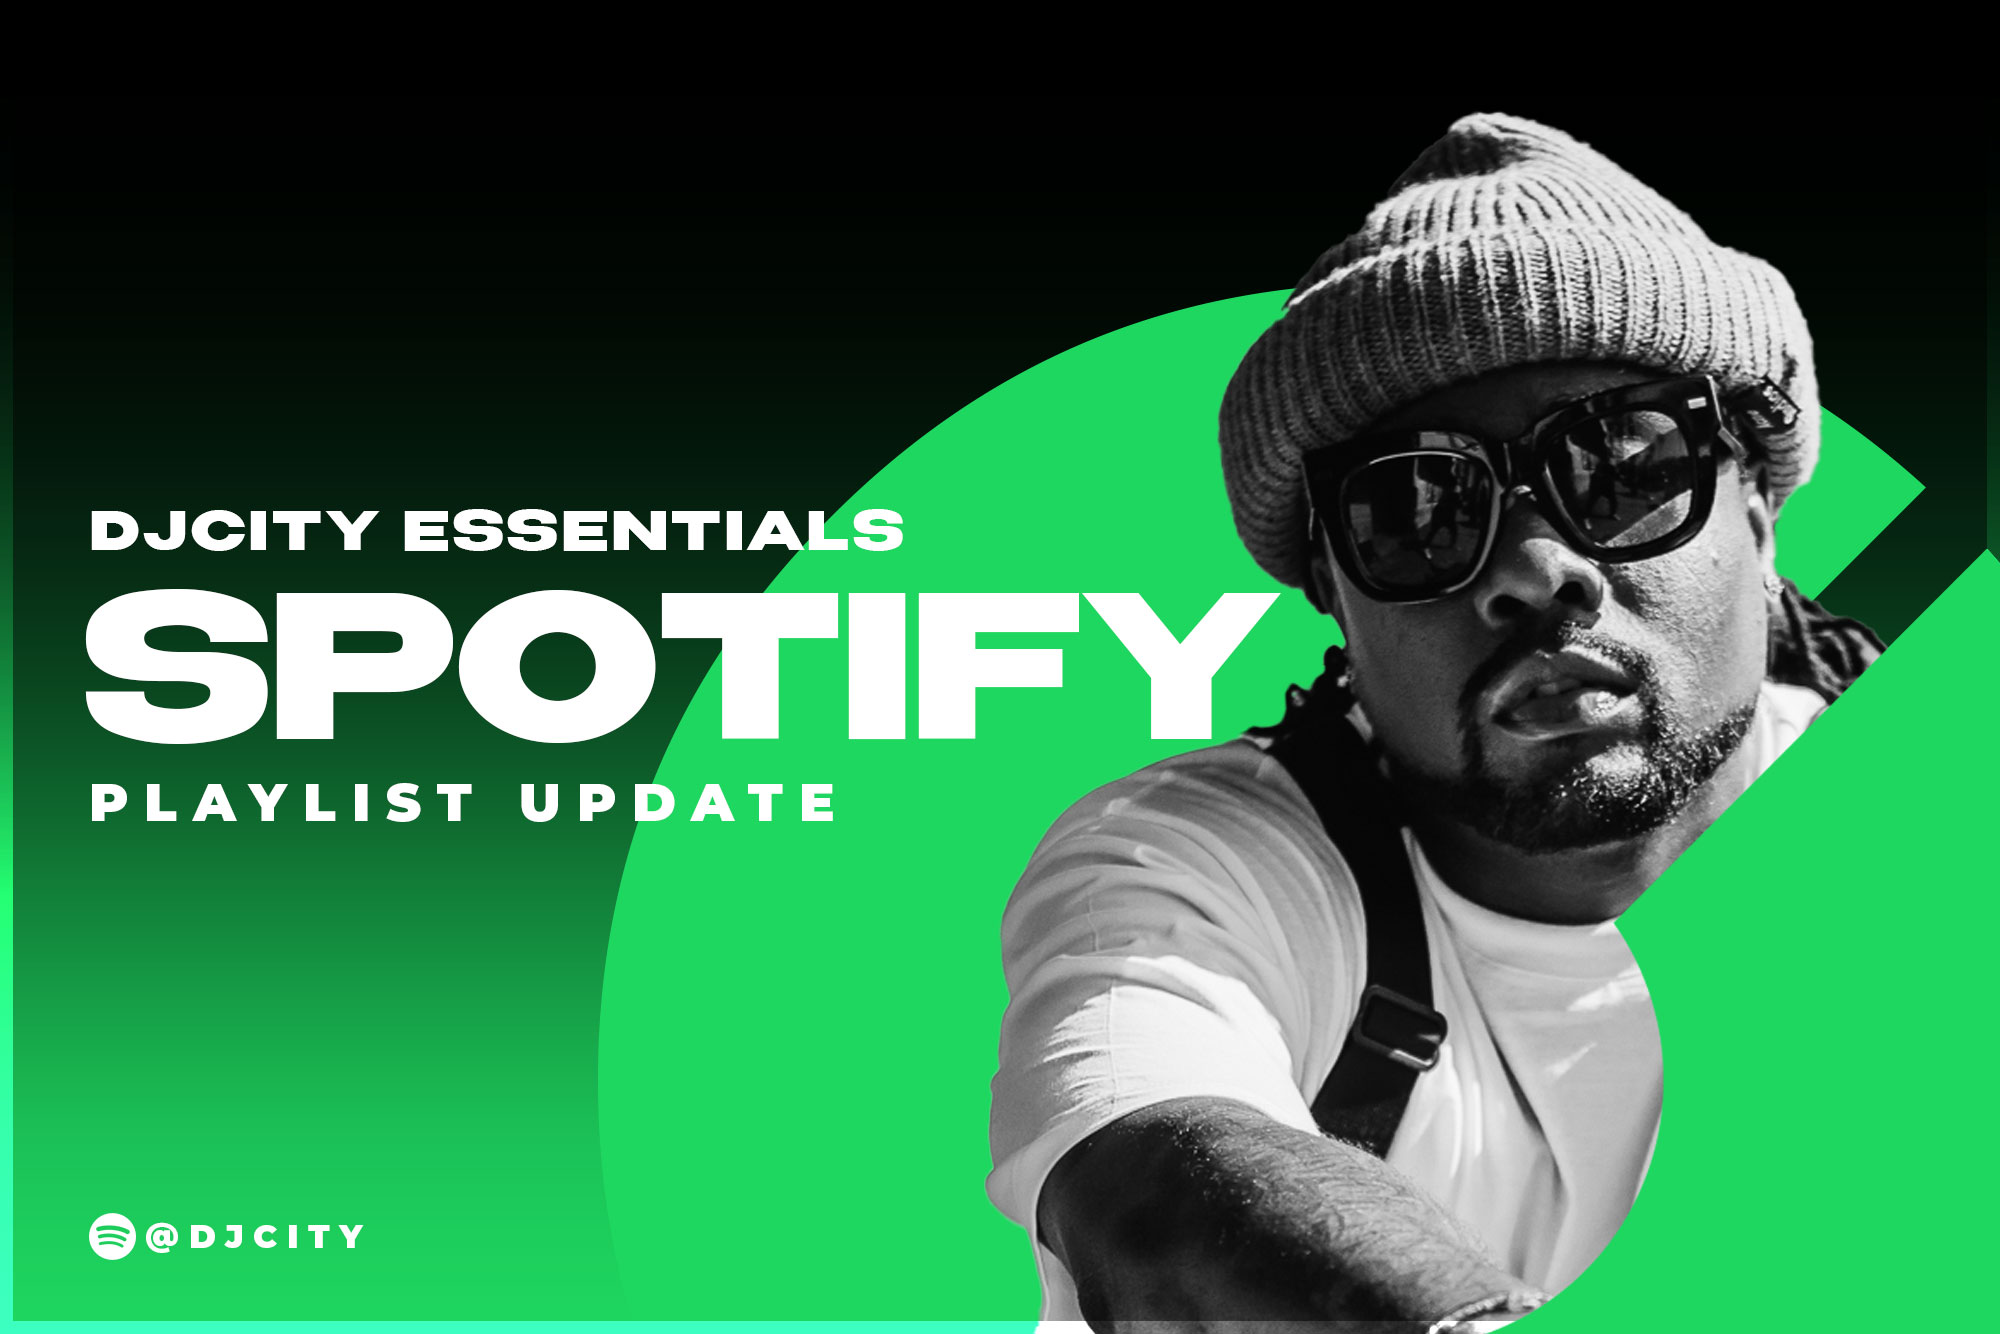 DJcity’s Spotify Playlist Update: Oct. 5